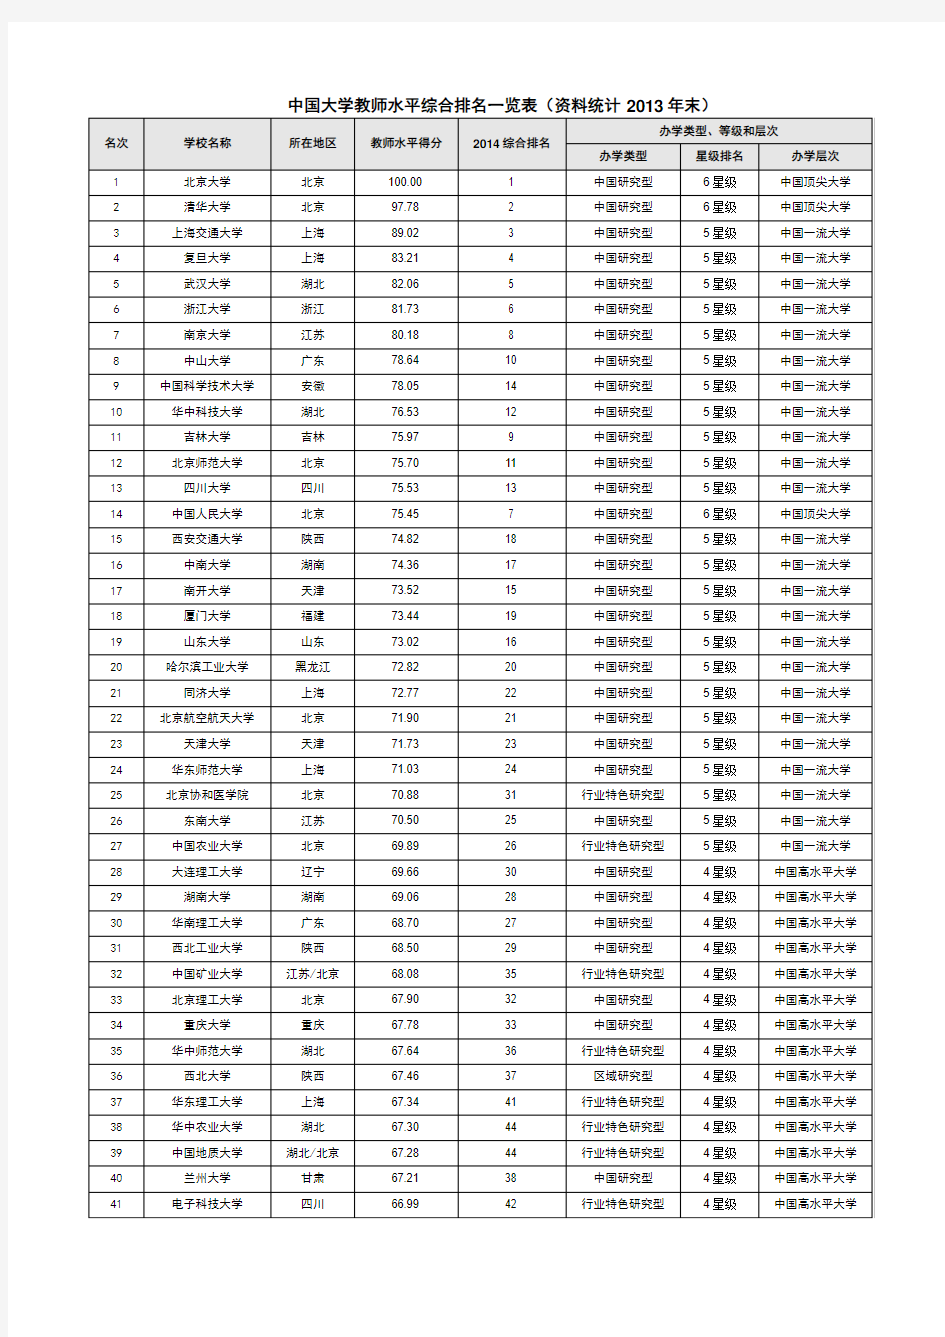 中国大学教师水平综合排名一览表(资料统计2013年末)